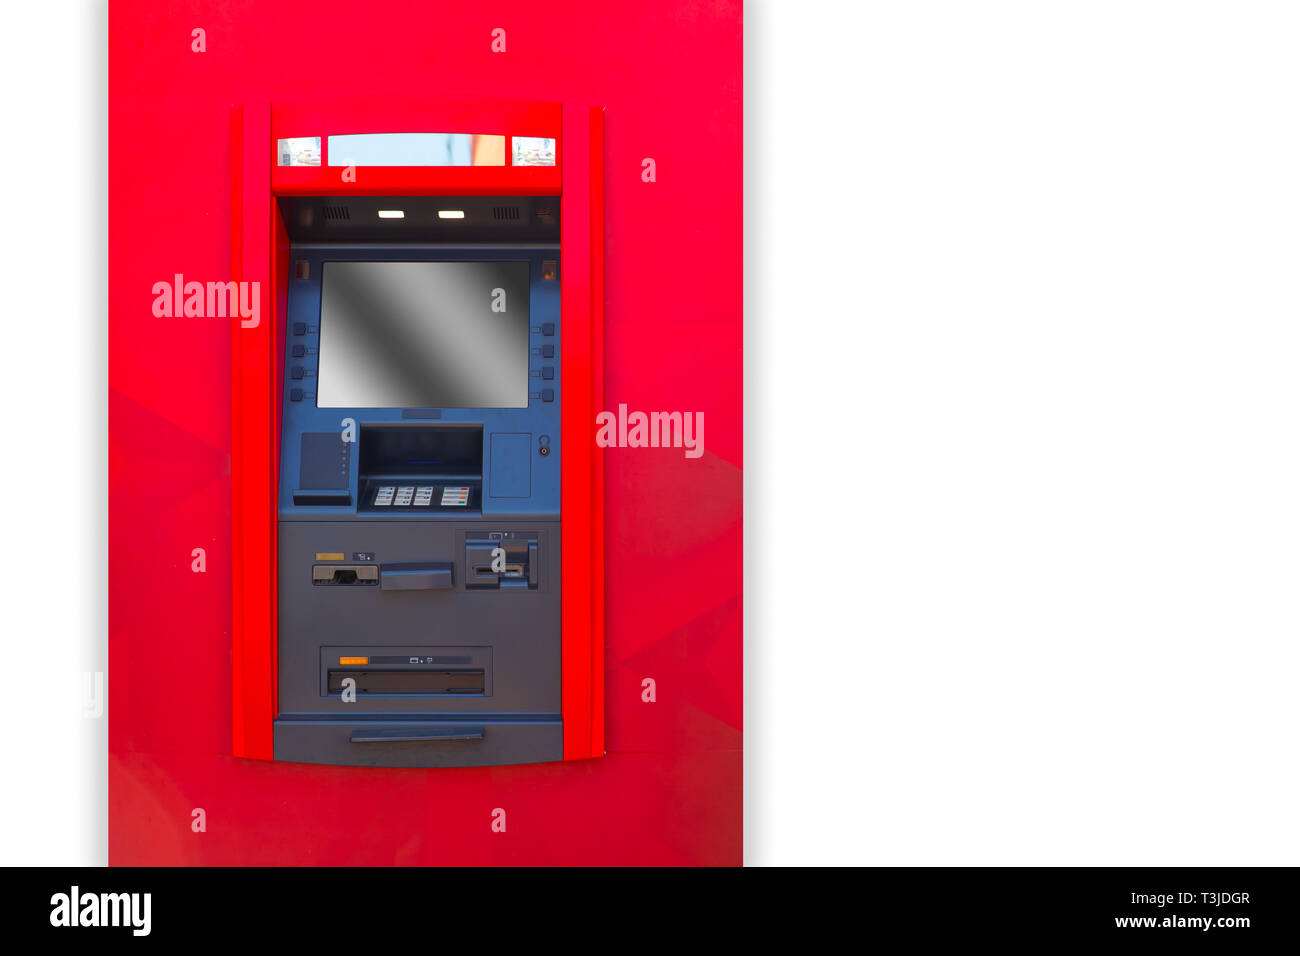 Terminale ATM banking la macchina in vista frontale con uno spazio bianco per il testo Foto Stock